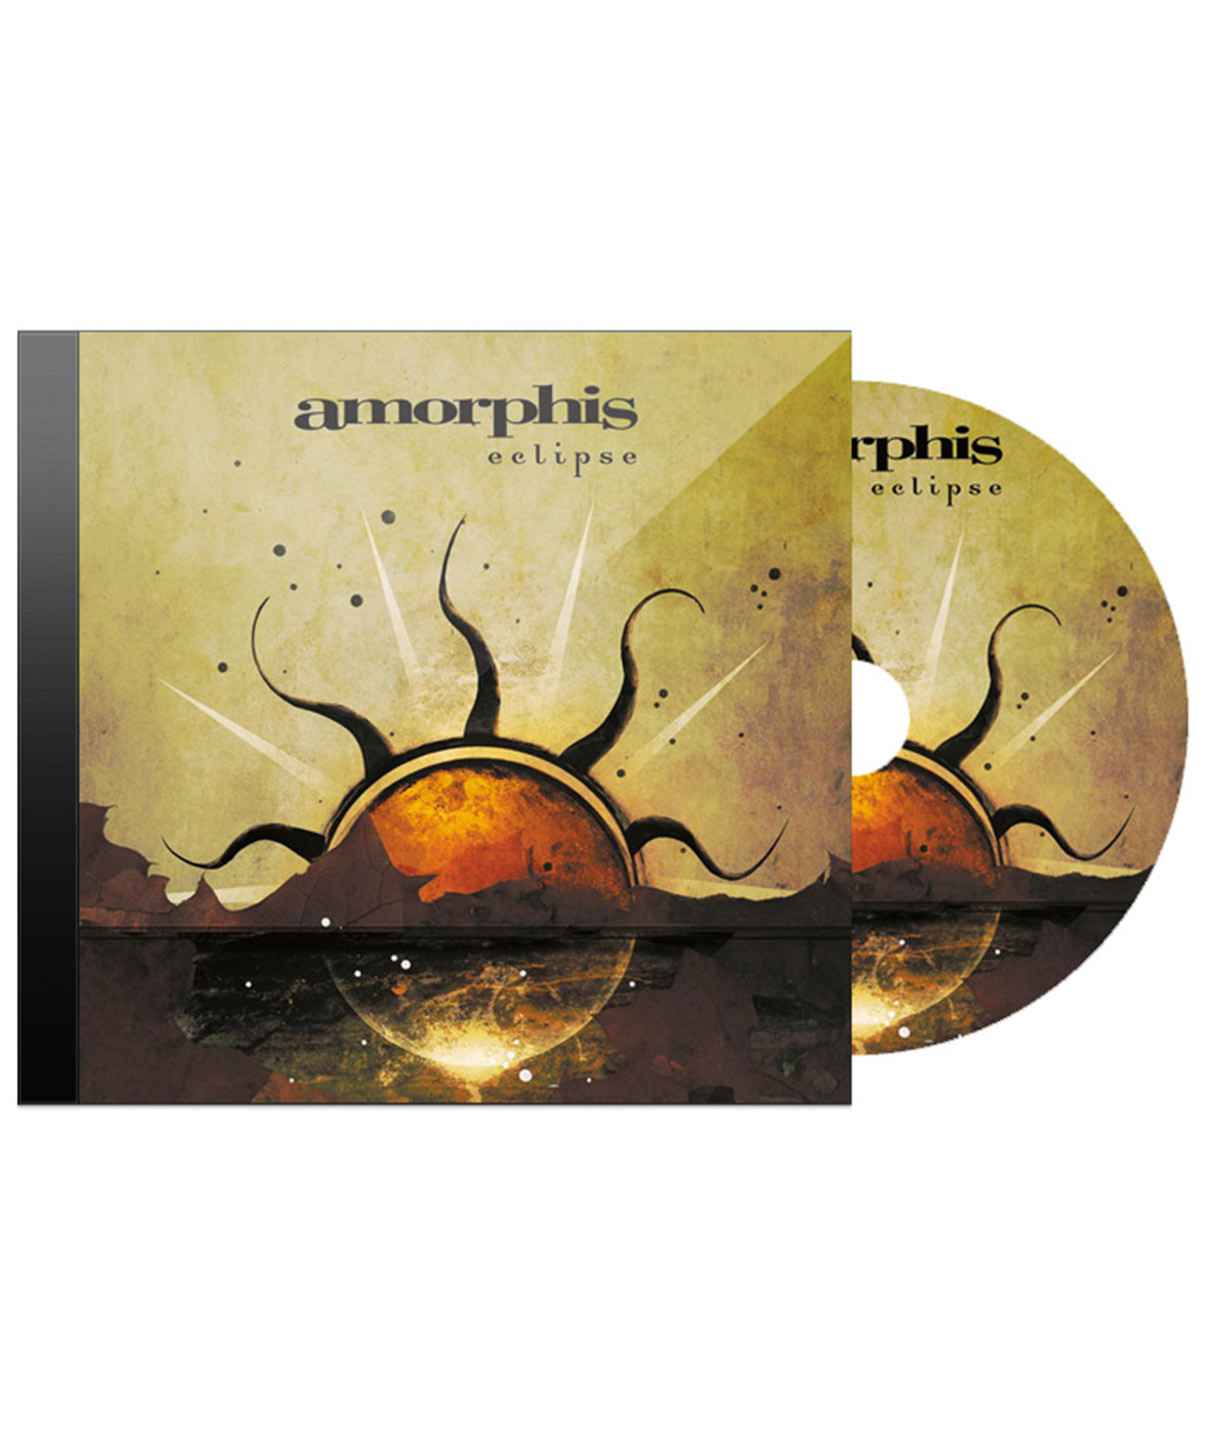 CD Диск Amorphis Eclipse - фото 1 - rockbunker.ru